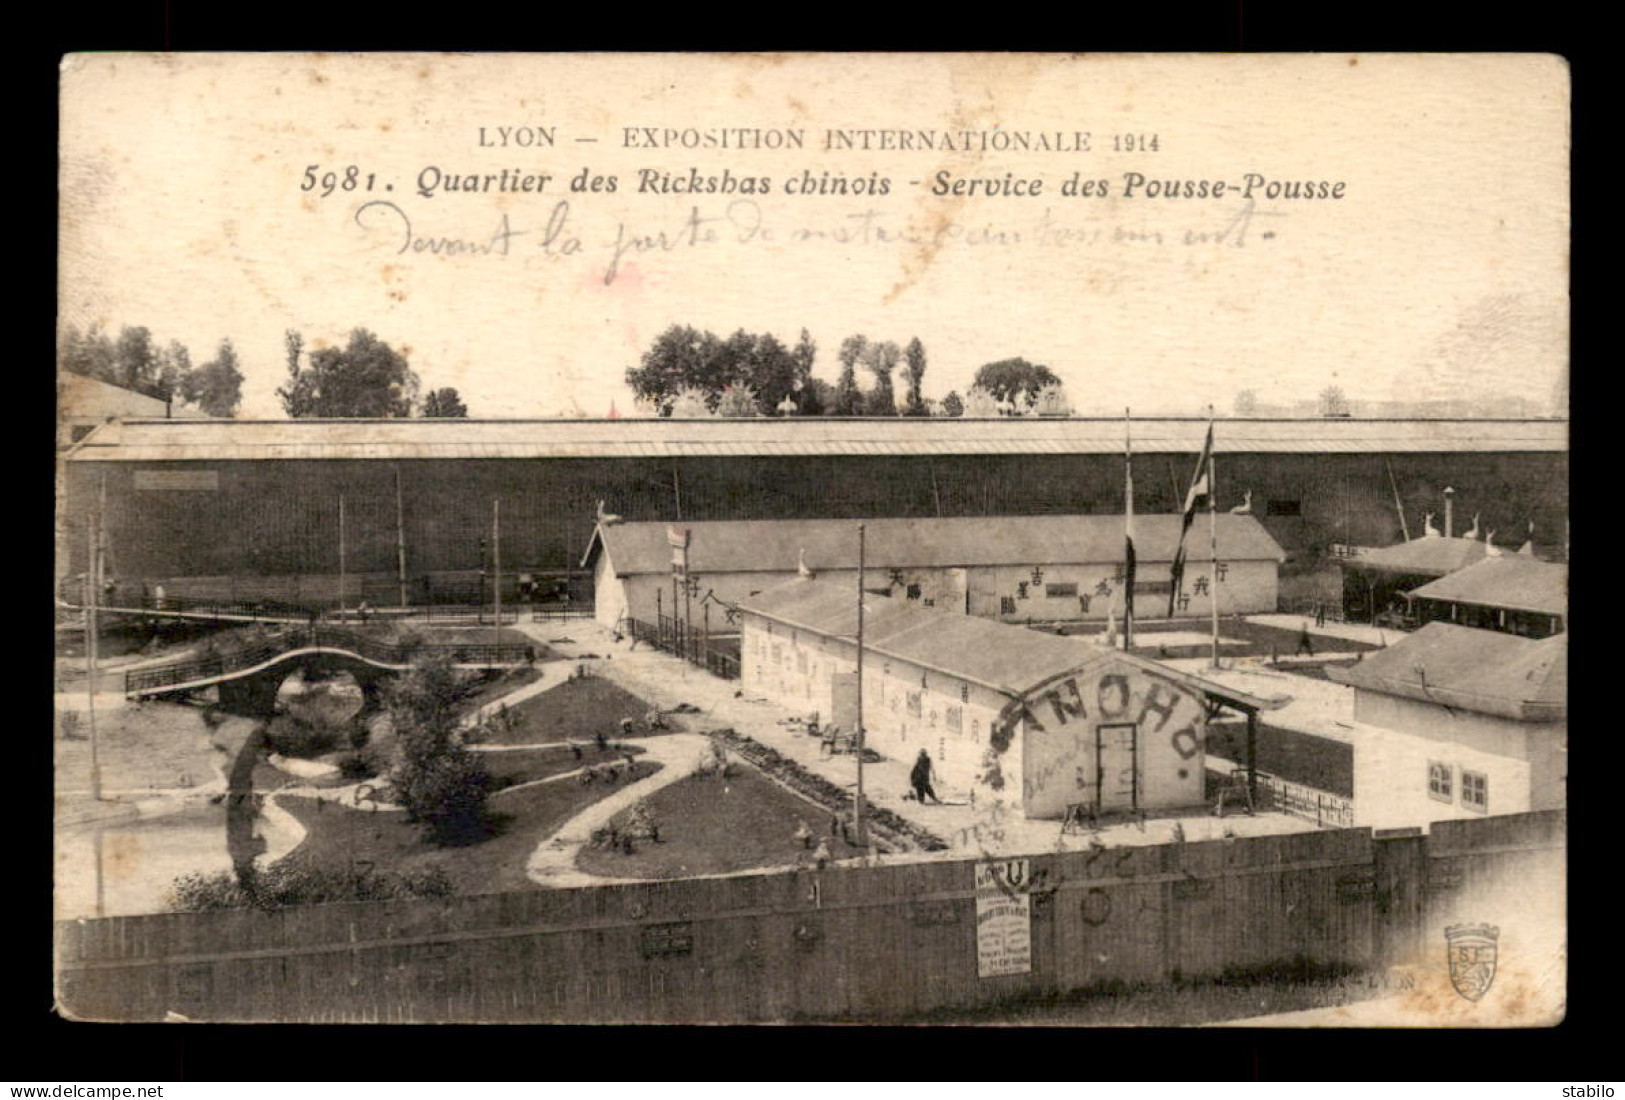 69 - LYON - EXPOSITION INTERNATIONALE 1914 - QUARTIER DES RICKSBAS CHINOIS - SERVICE DES POUSSES-POUSSES - Lyon 4